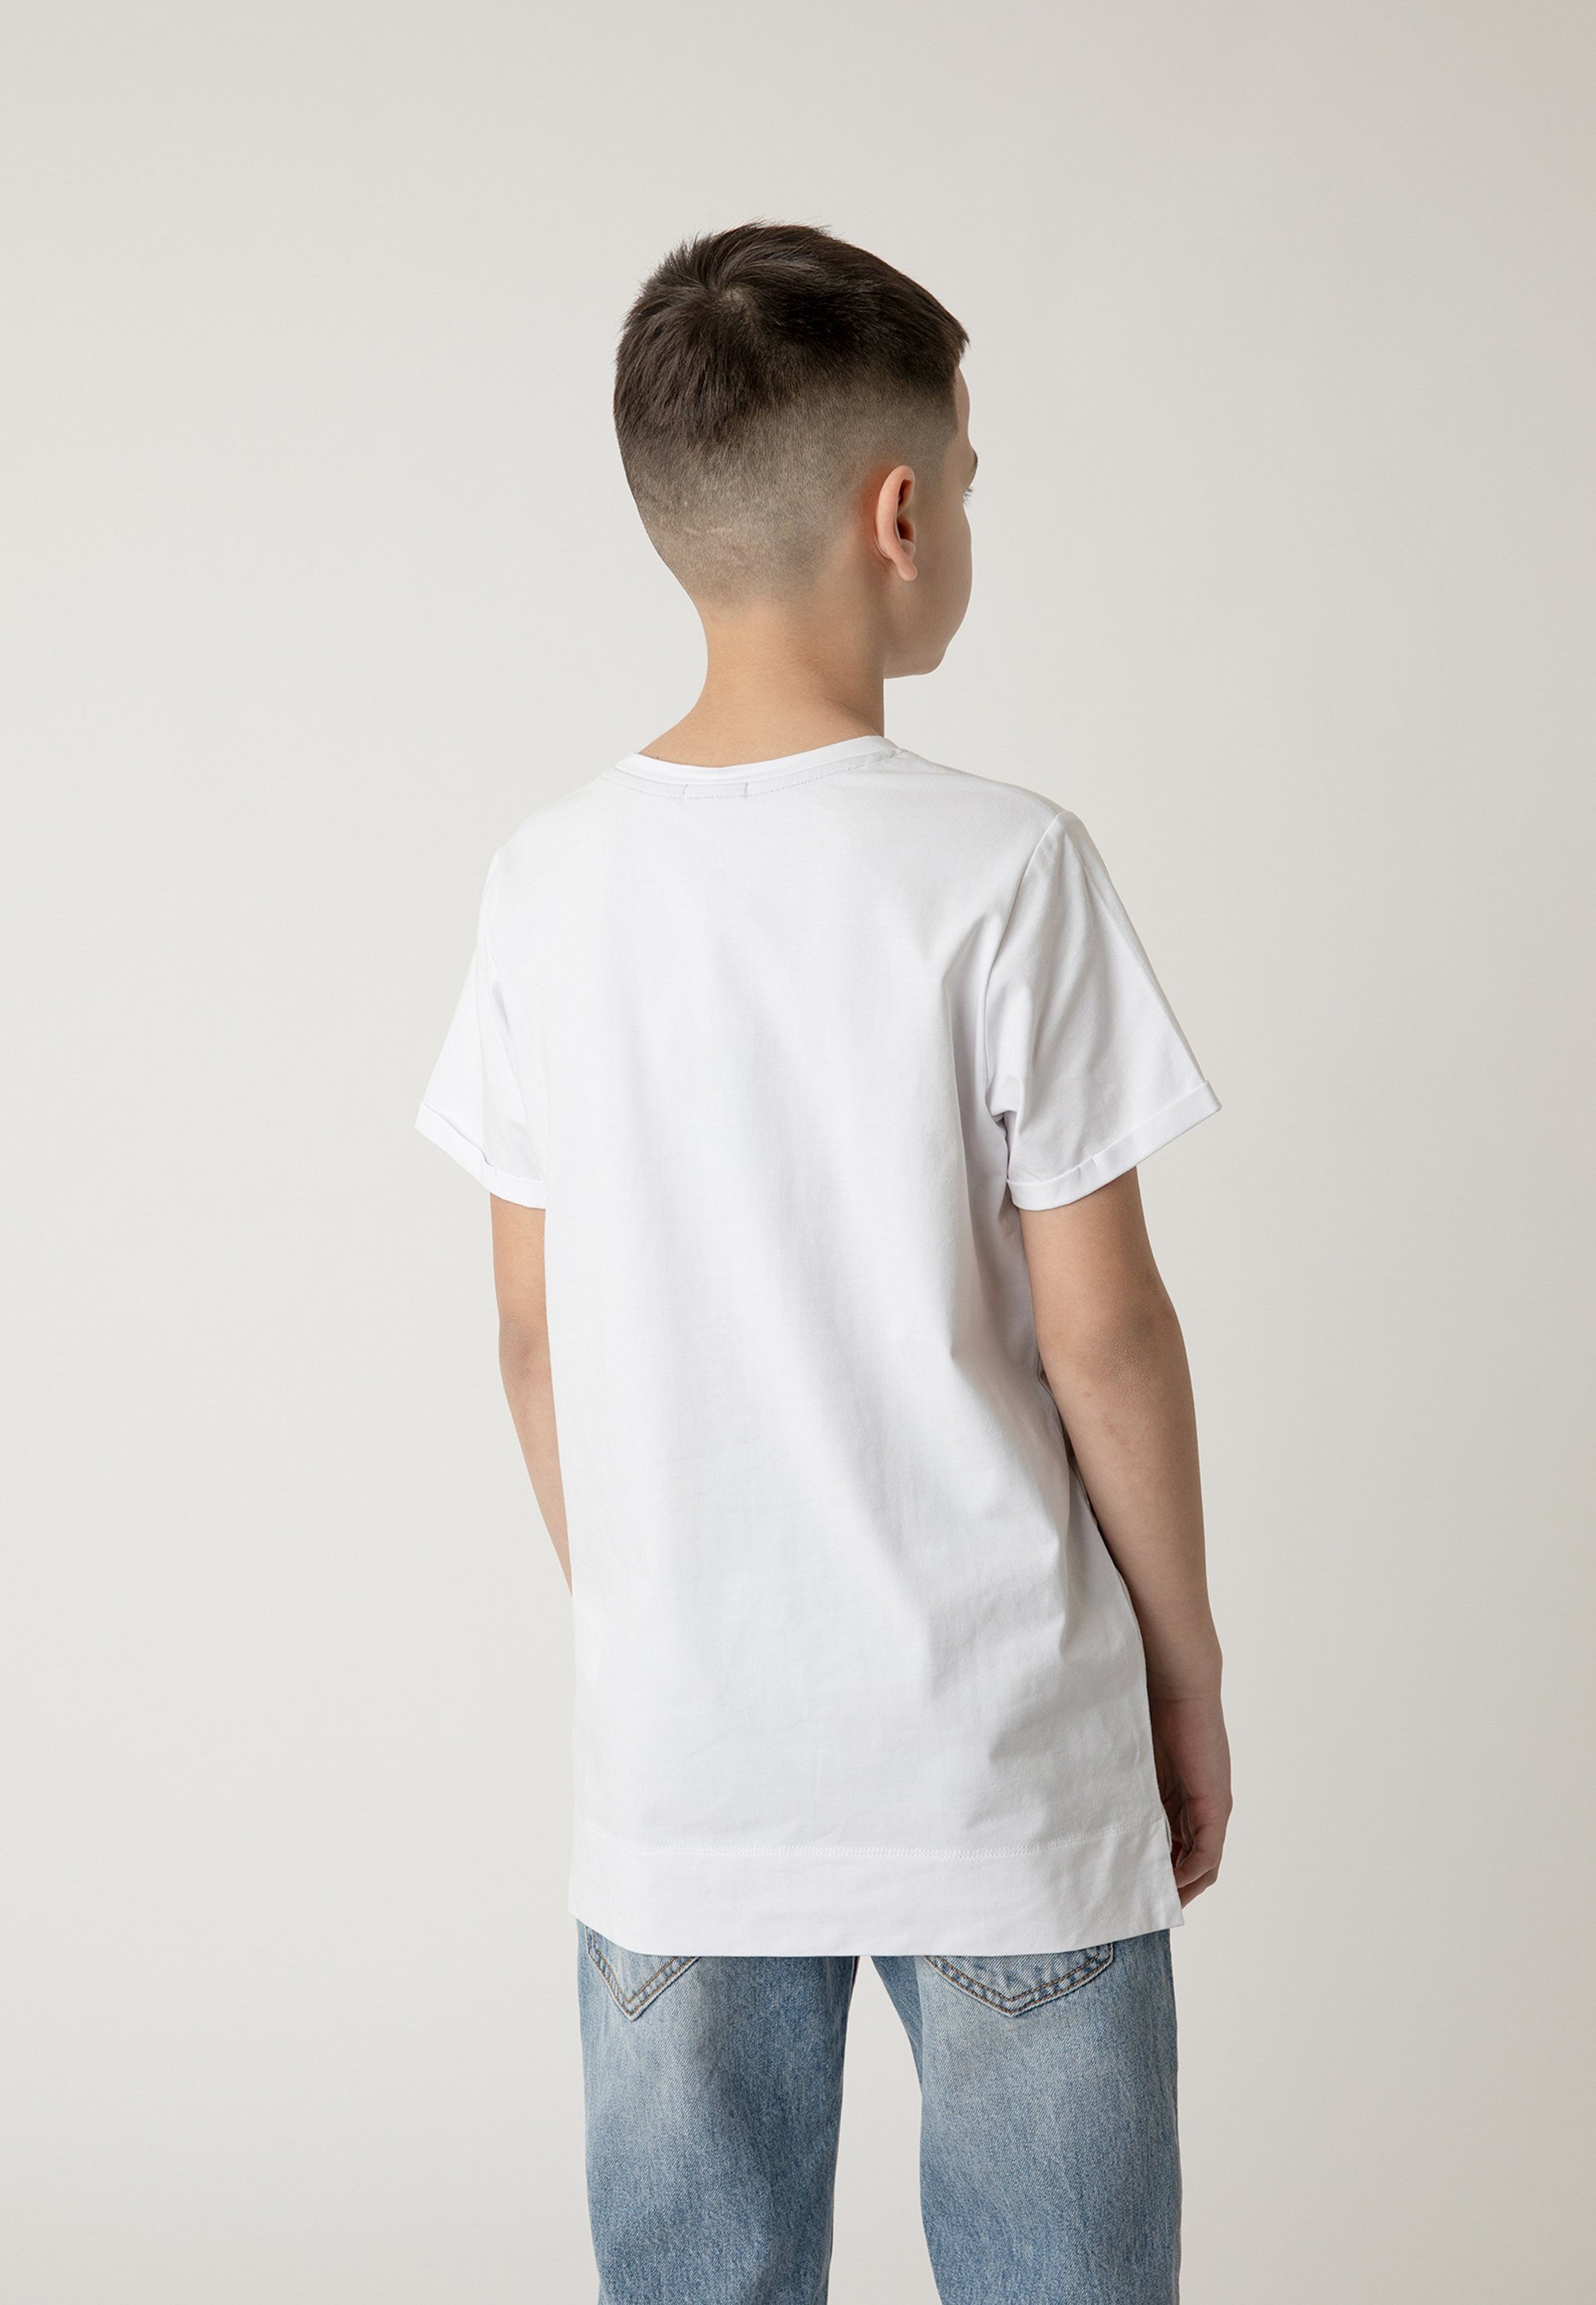 Material Aus für hochwertigem Frontprint, T-Shirt Gulliver absoluten mit Tragekomfort stylischem